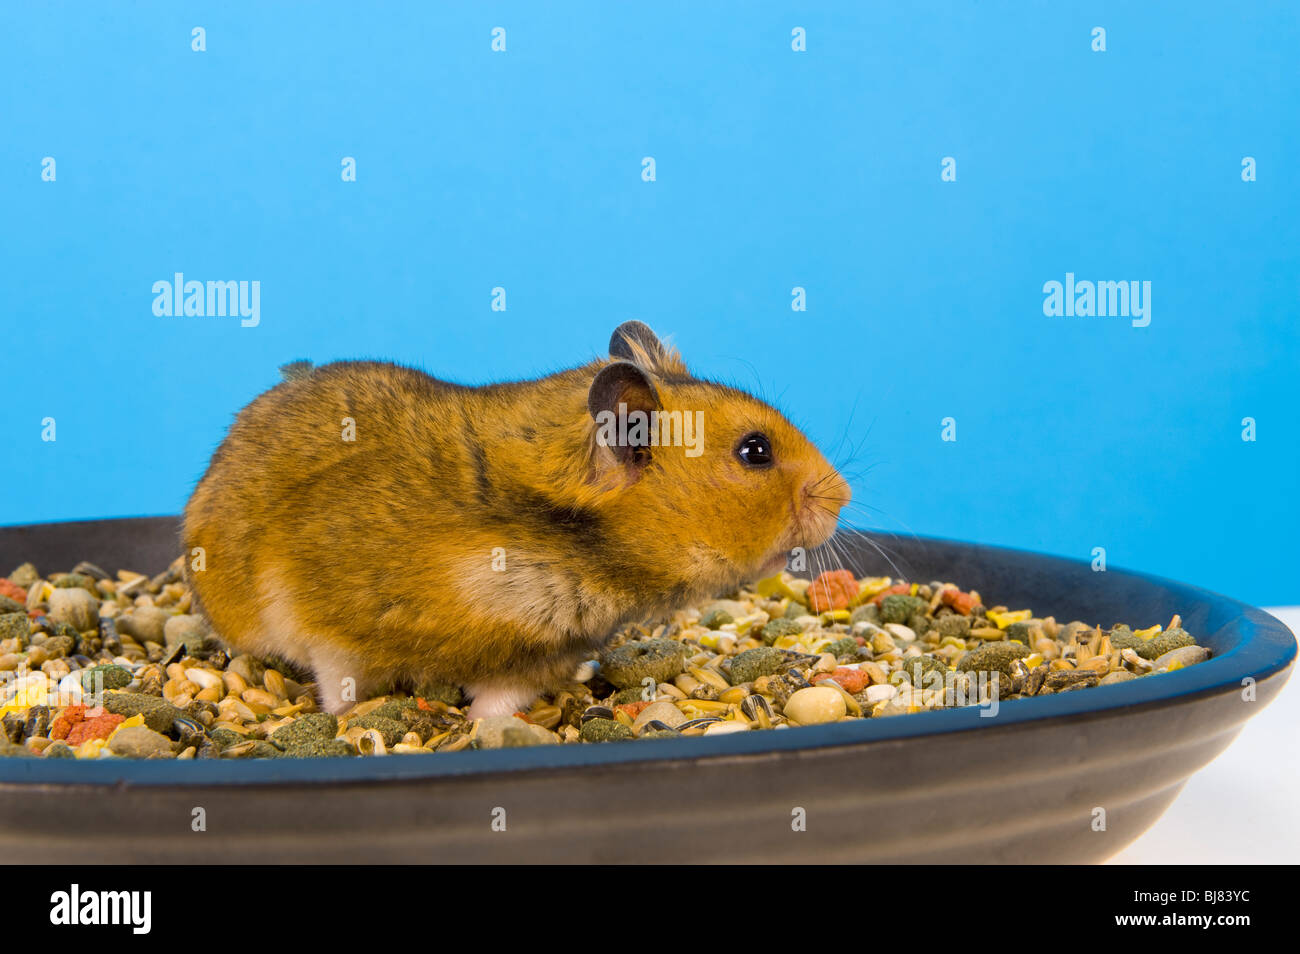 Sitzen in Essen Mais Schale braun Hamster blauen Hintergrund Goldhamster Hamster Essen Essen Feed füttern Stand stehend sehen Sie auf der Suche Stockfoto